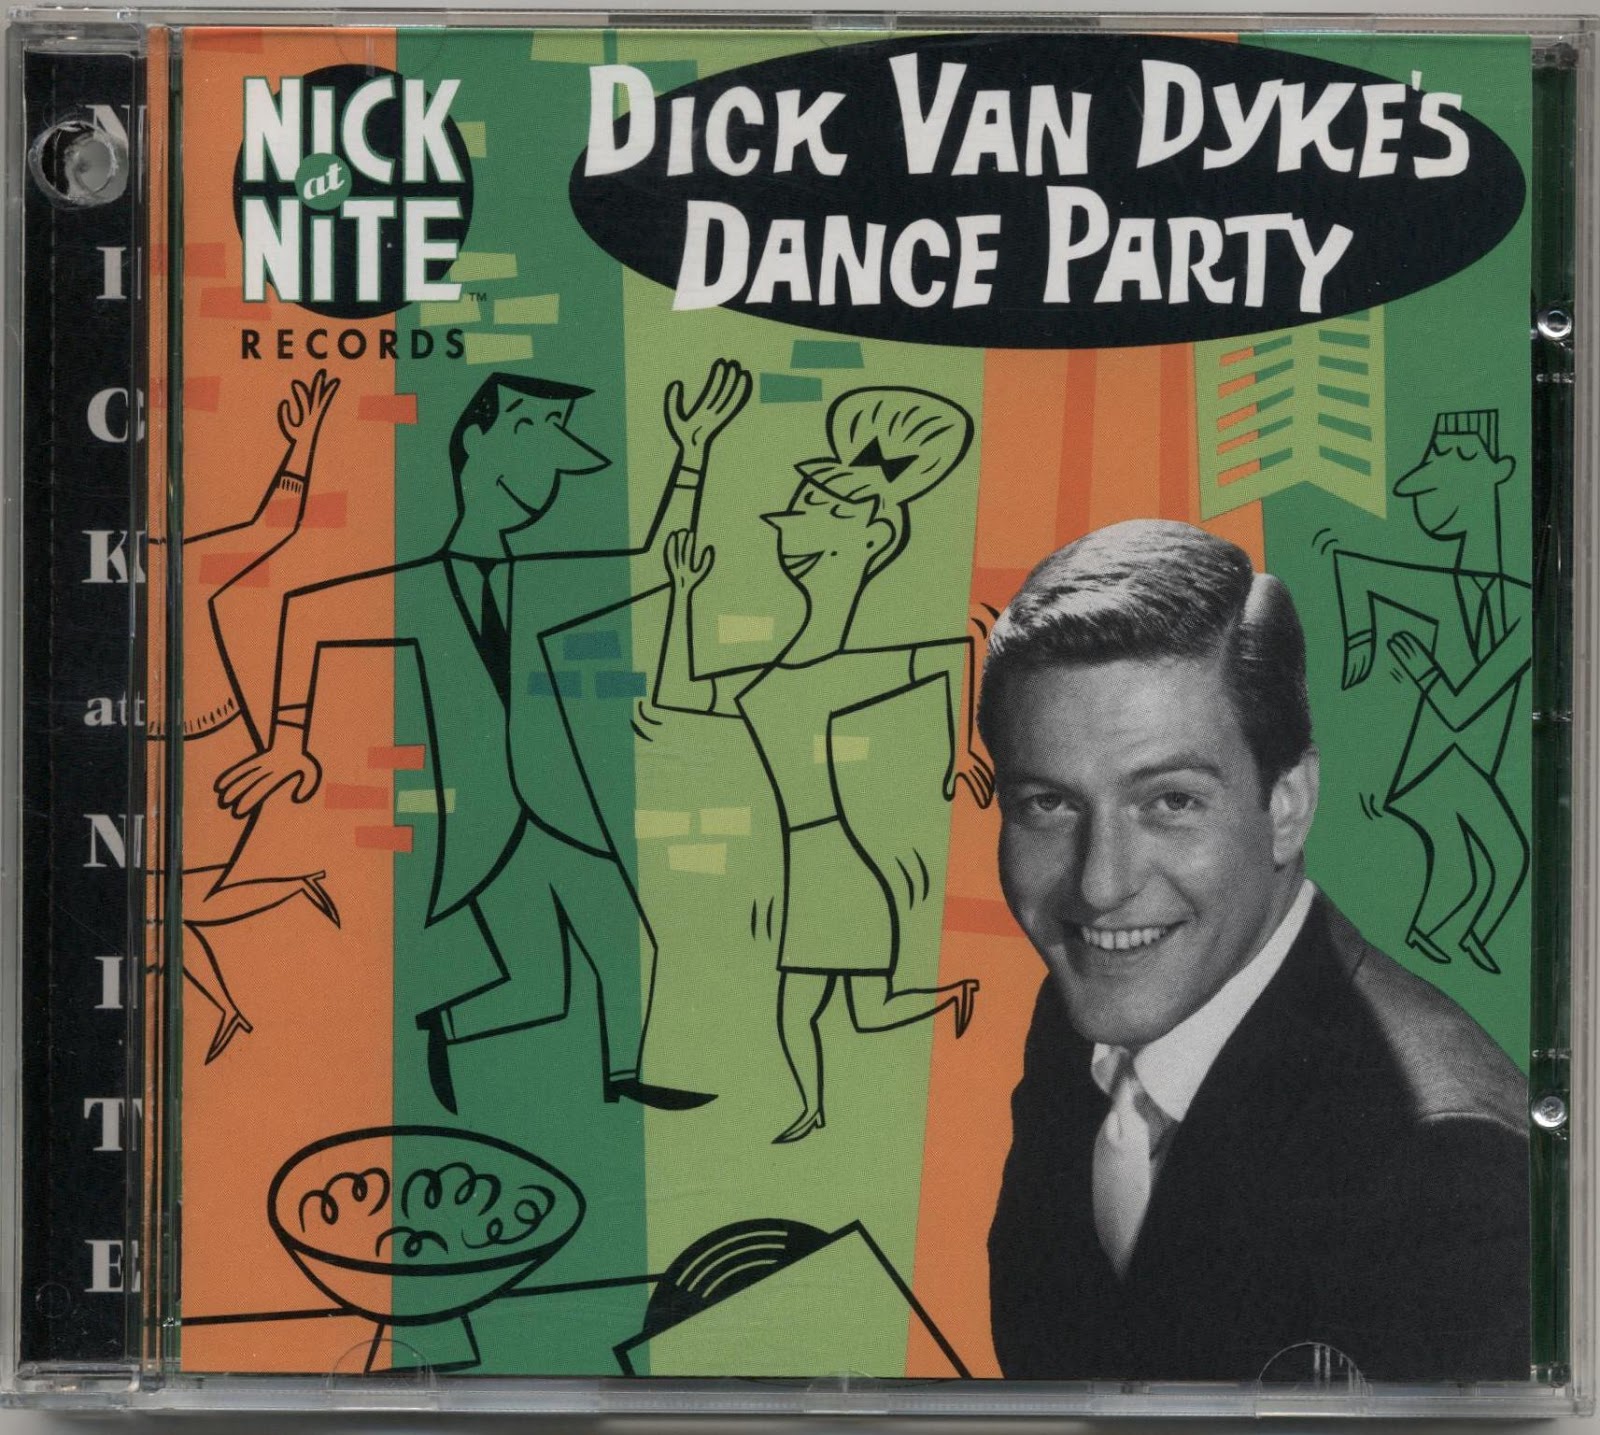 Dick van dyke dancing video